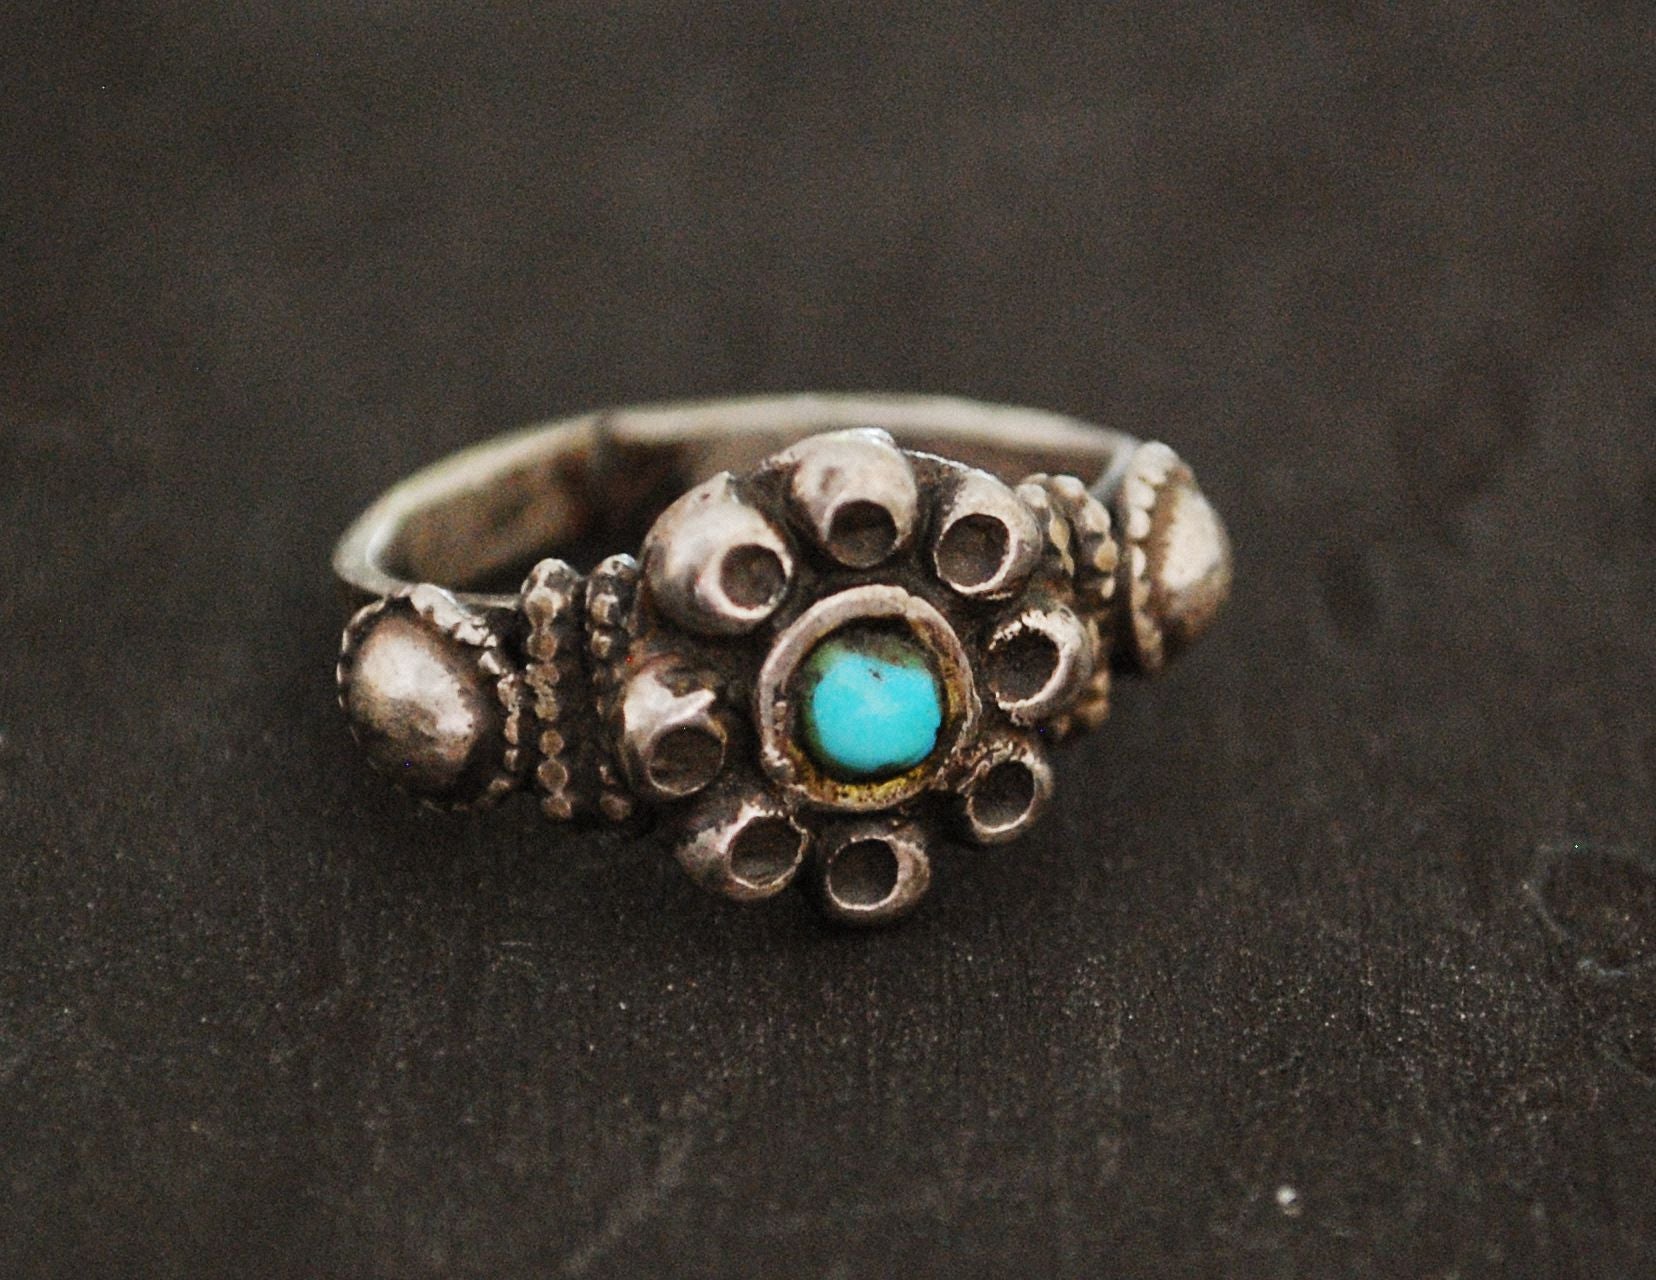 Rajasthani Turquoise Ring - Size 6